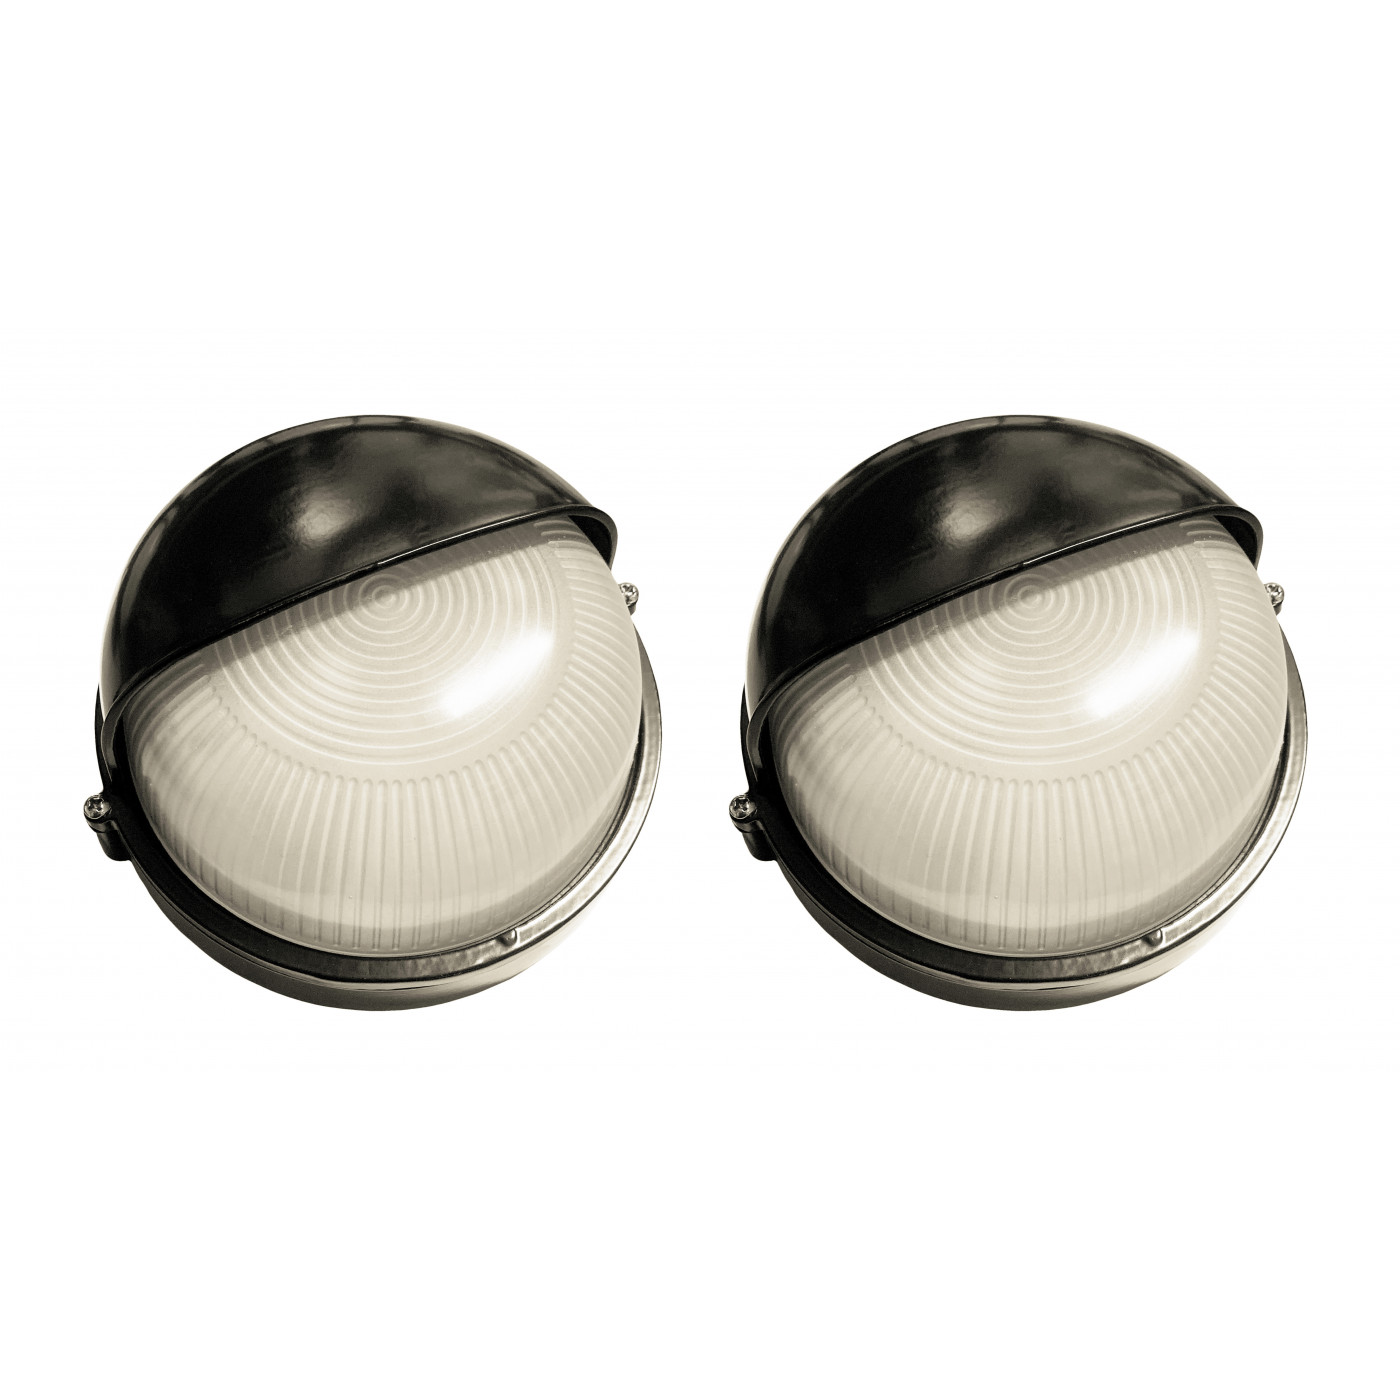 Set of 2 industrial outdoor lamps (type 1, black, E27, splash-proof, 19x18x10 cm)  - 1